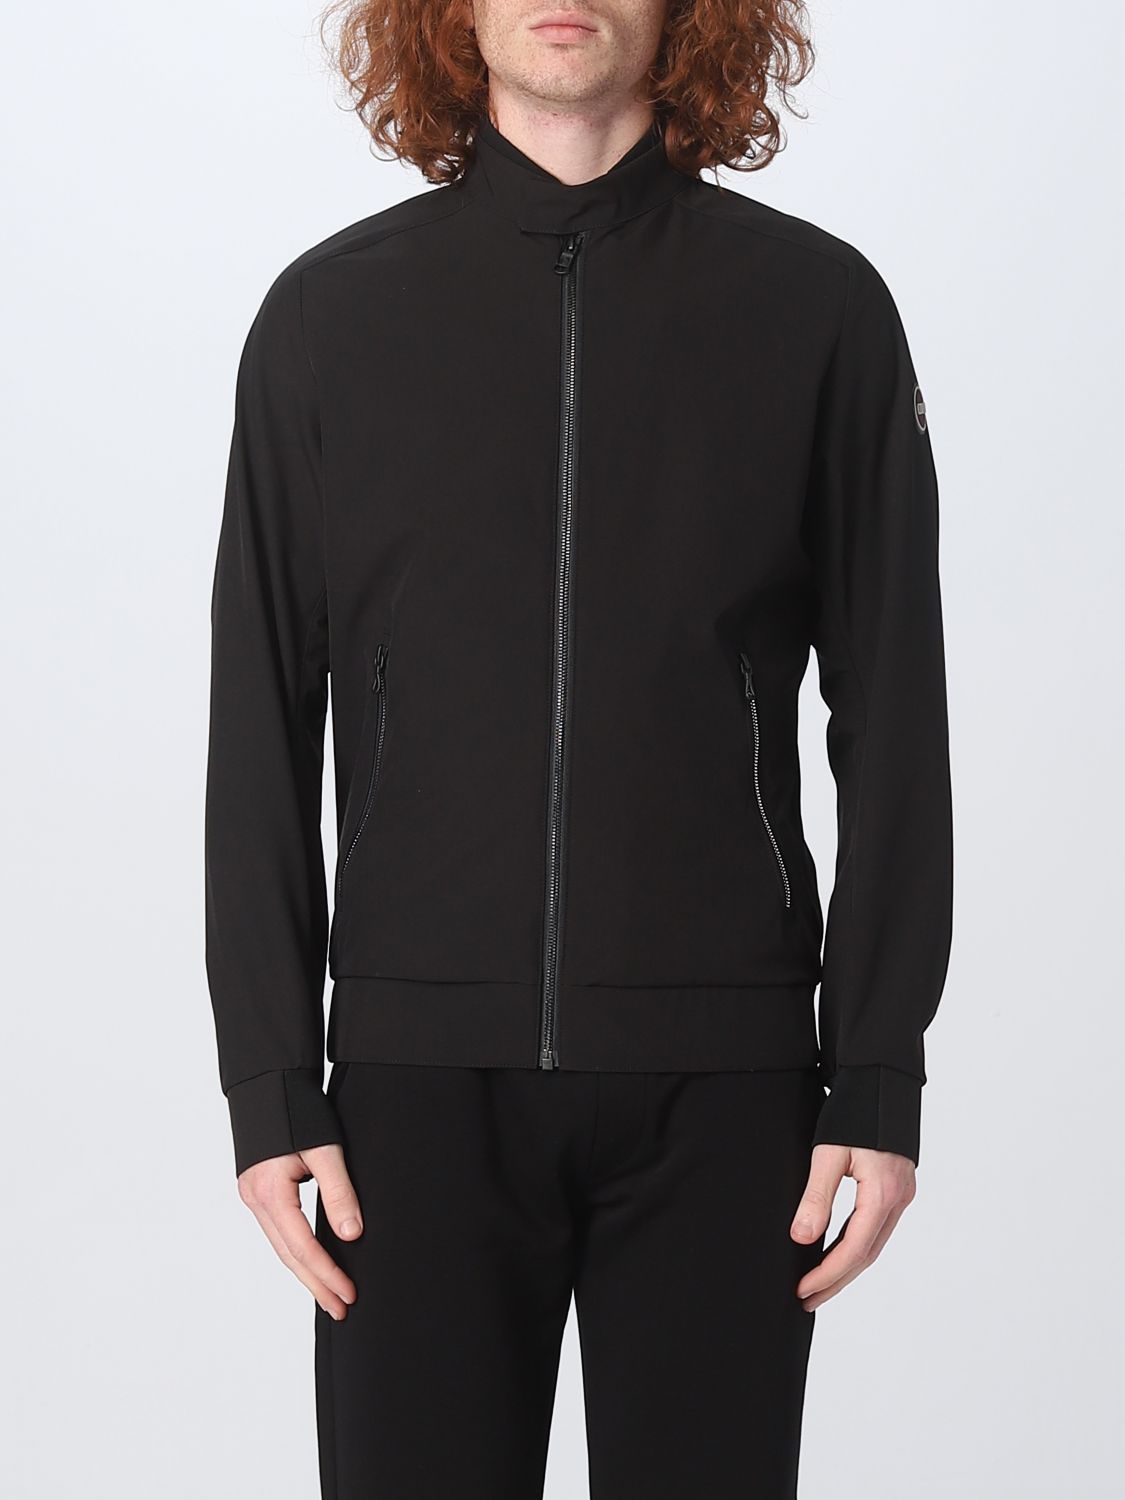 COLMAR: jacket for man - Black | Colmar jacket 1863R6WV online on ...